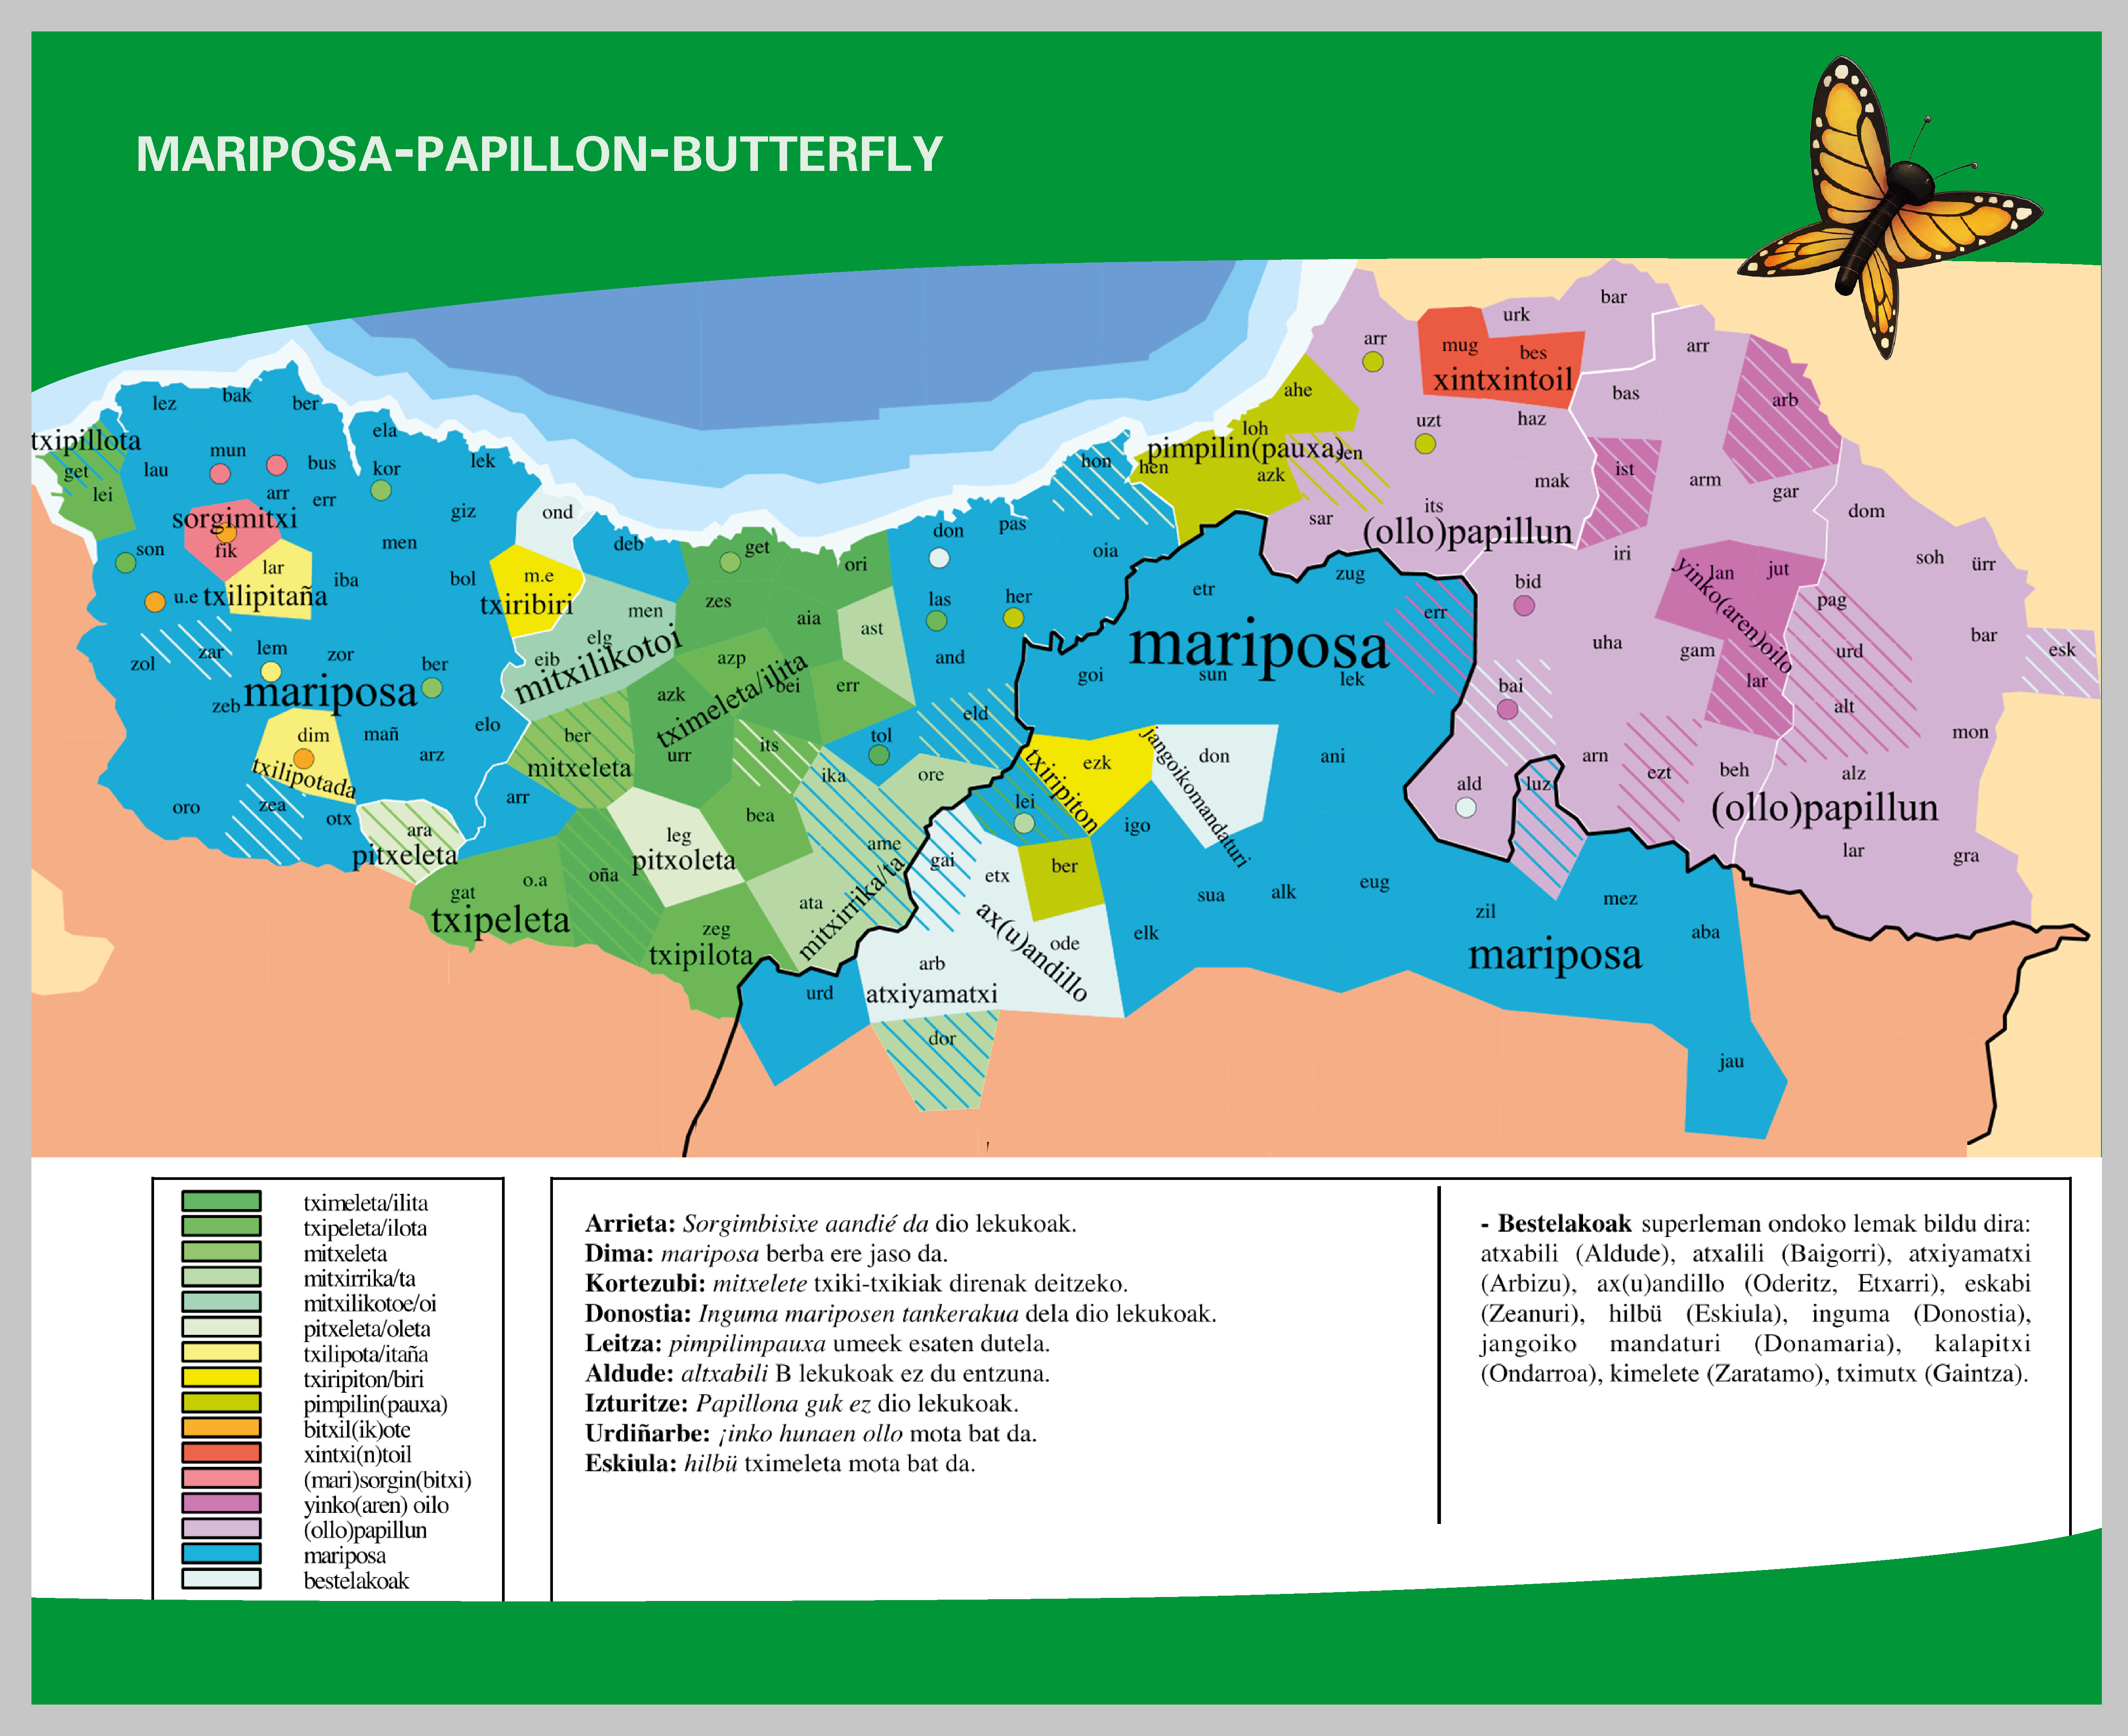 MARIPOSA-PAPILLON-BUTTERFLY